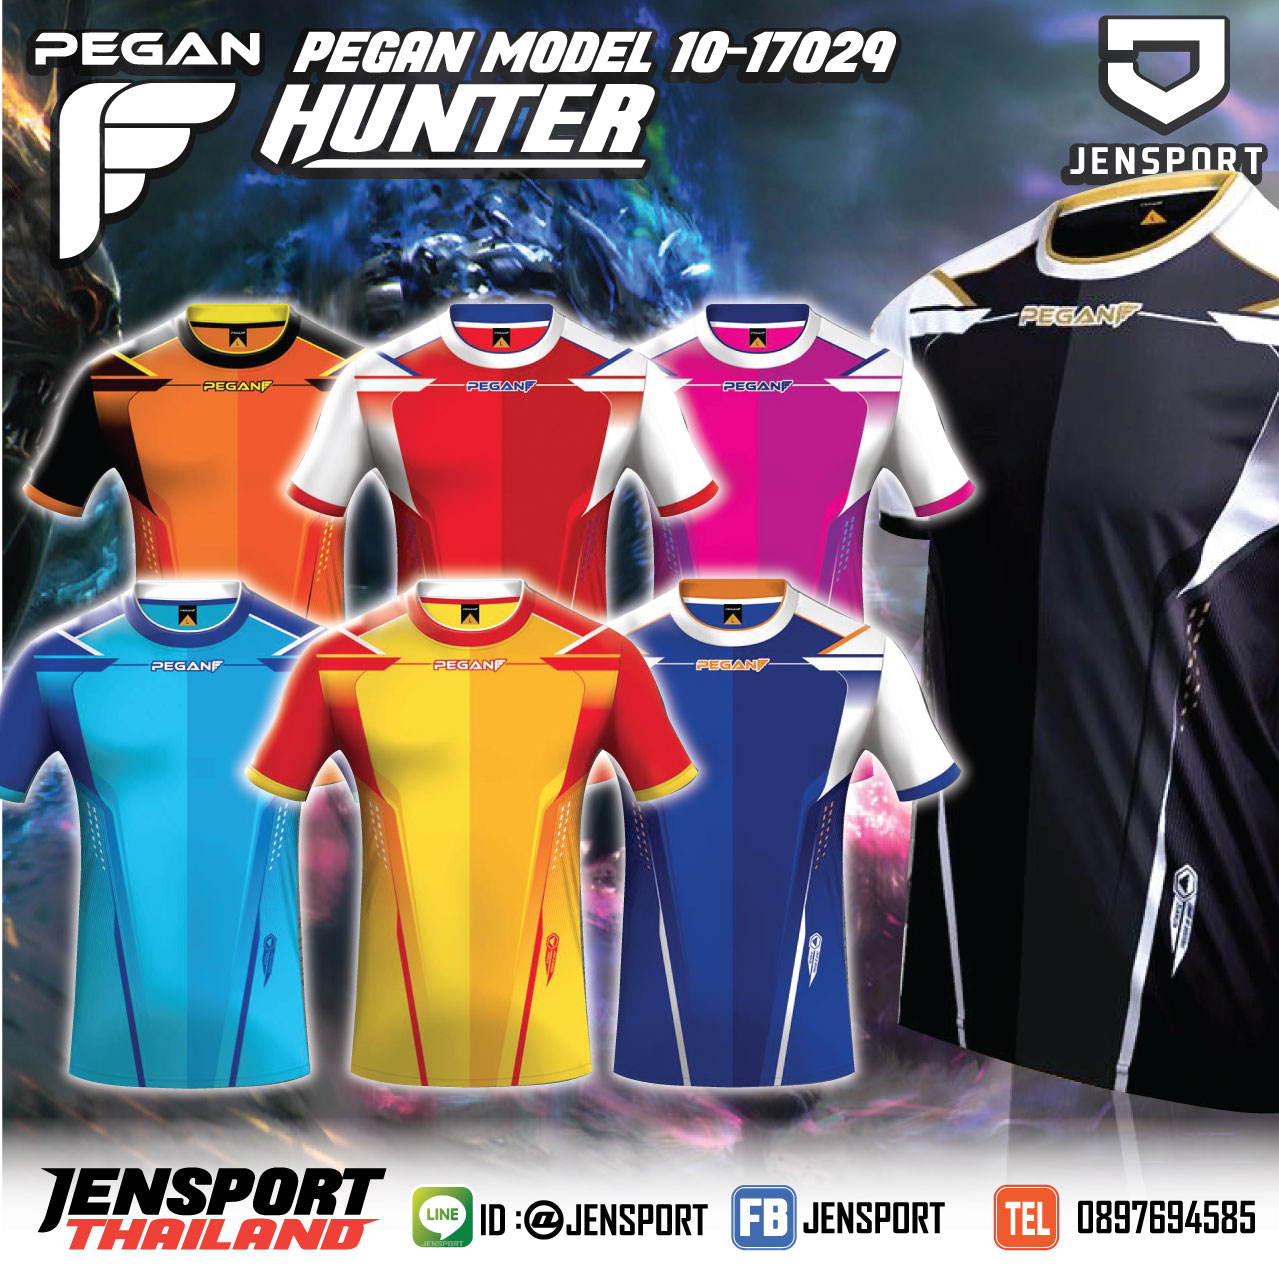 เสื้อฟุตบอล PEGAN รุ่น Hunter 10-17029 